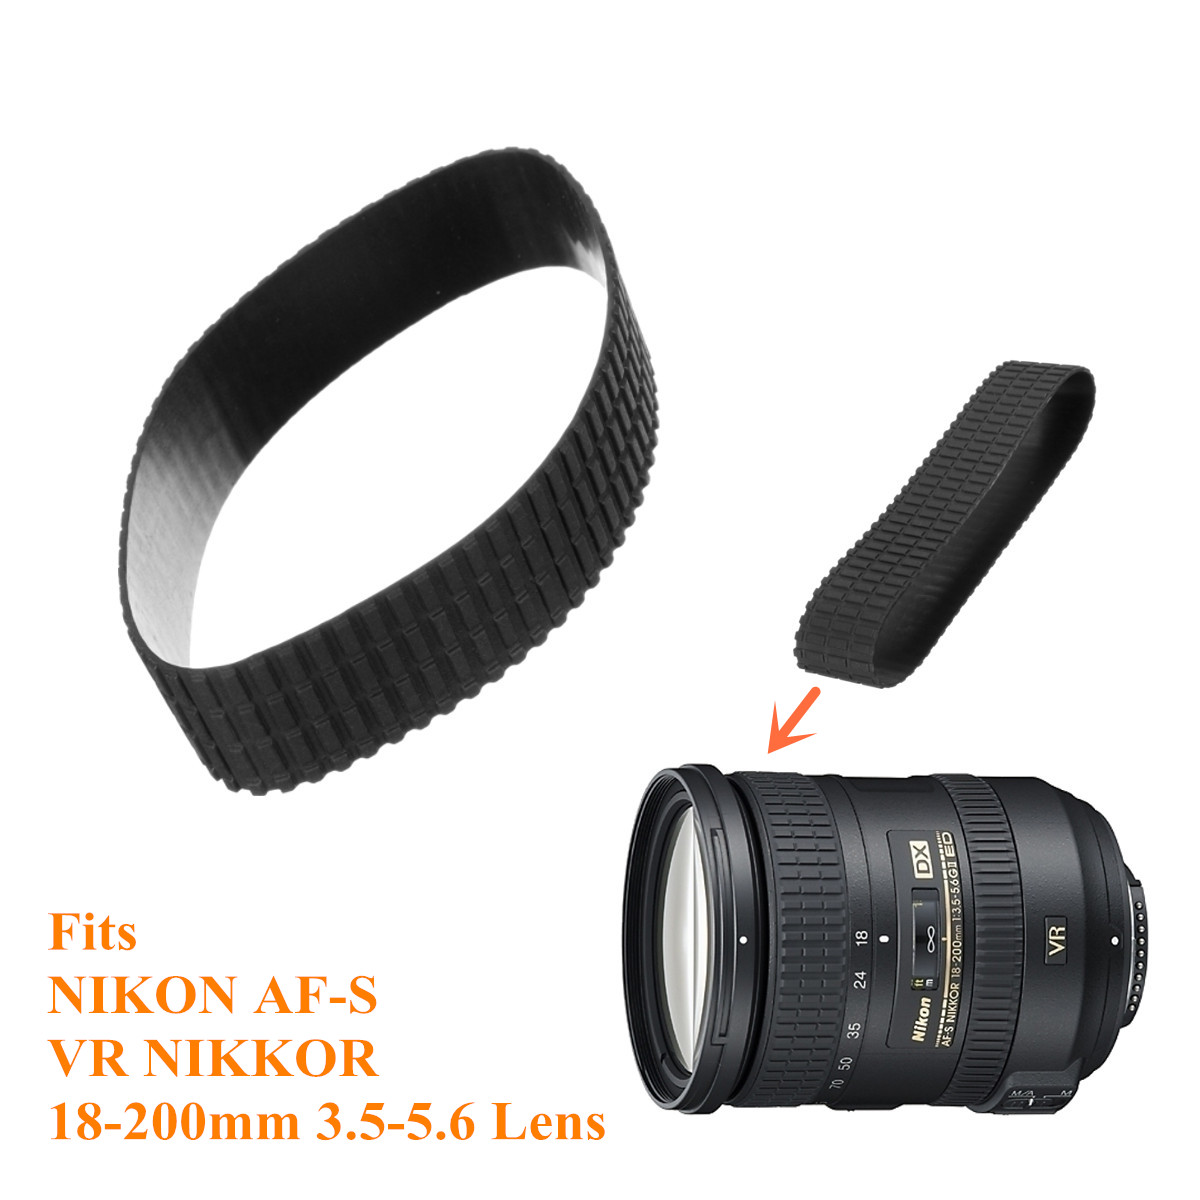 Zoom-Rubber-Ring-Replace-Part-For-Nikon-AF-S-VR-NIKKOR-18-200MM-f35-56G-Lens-1174585-1